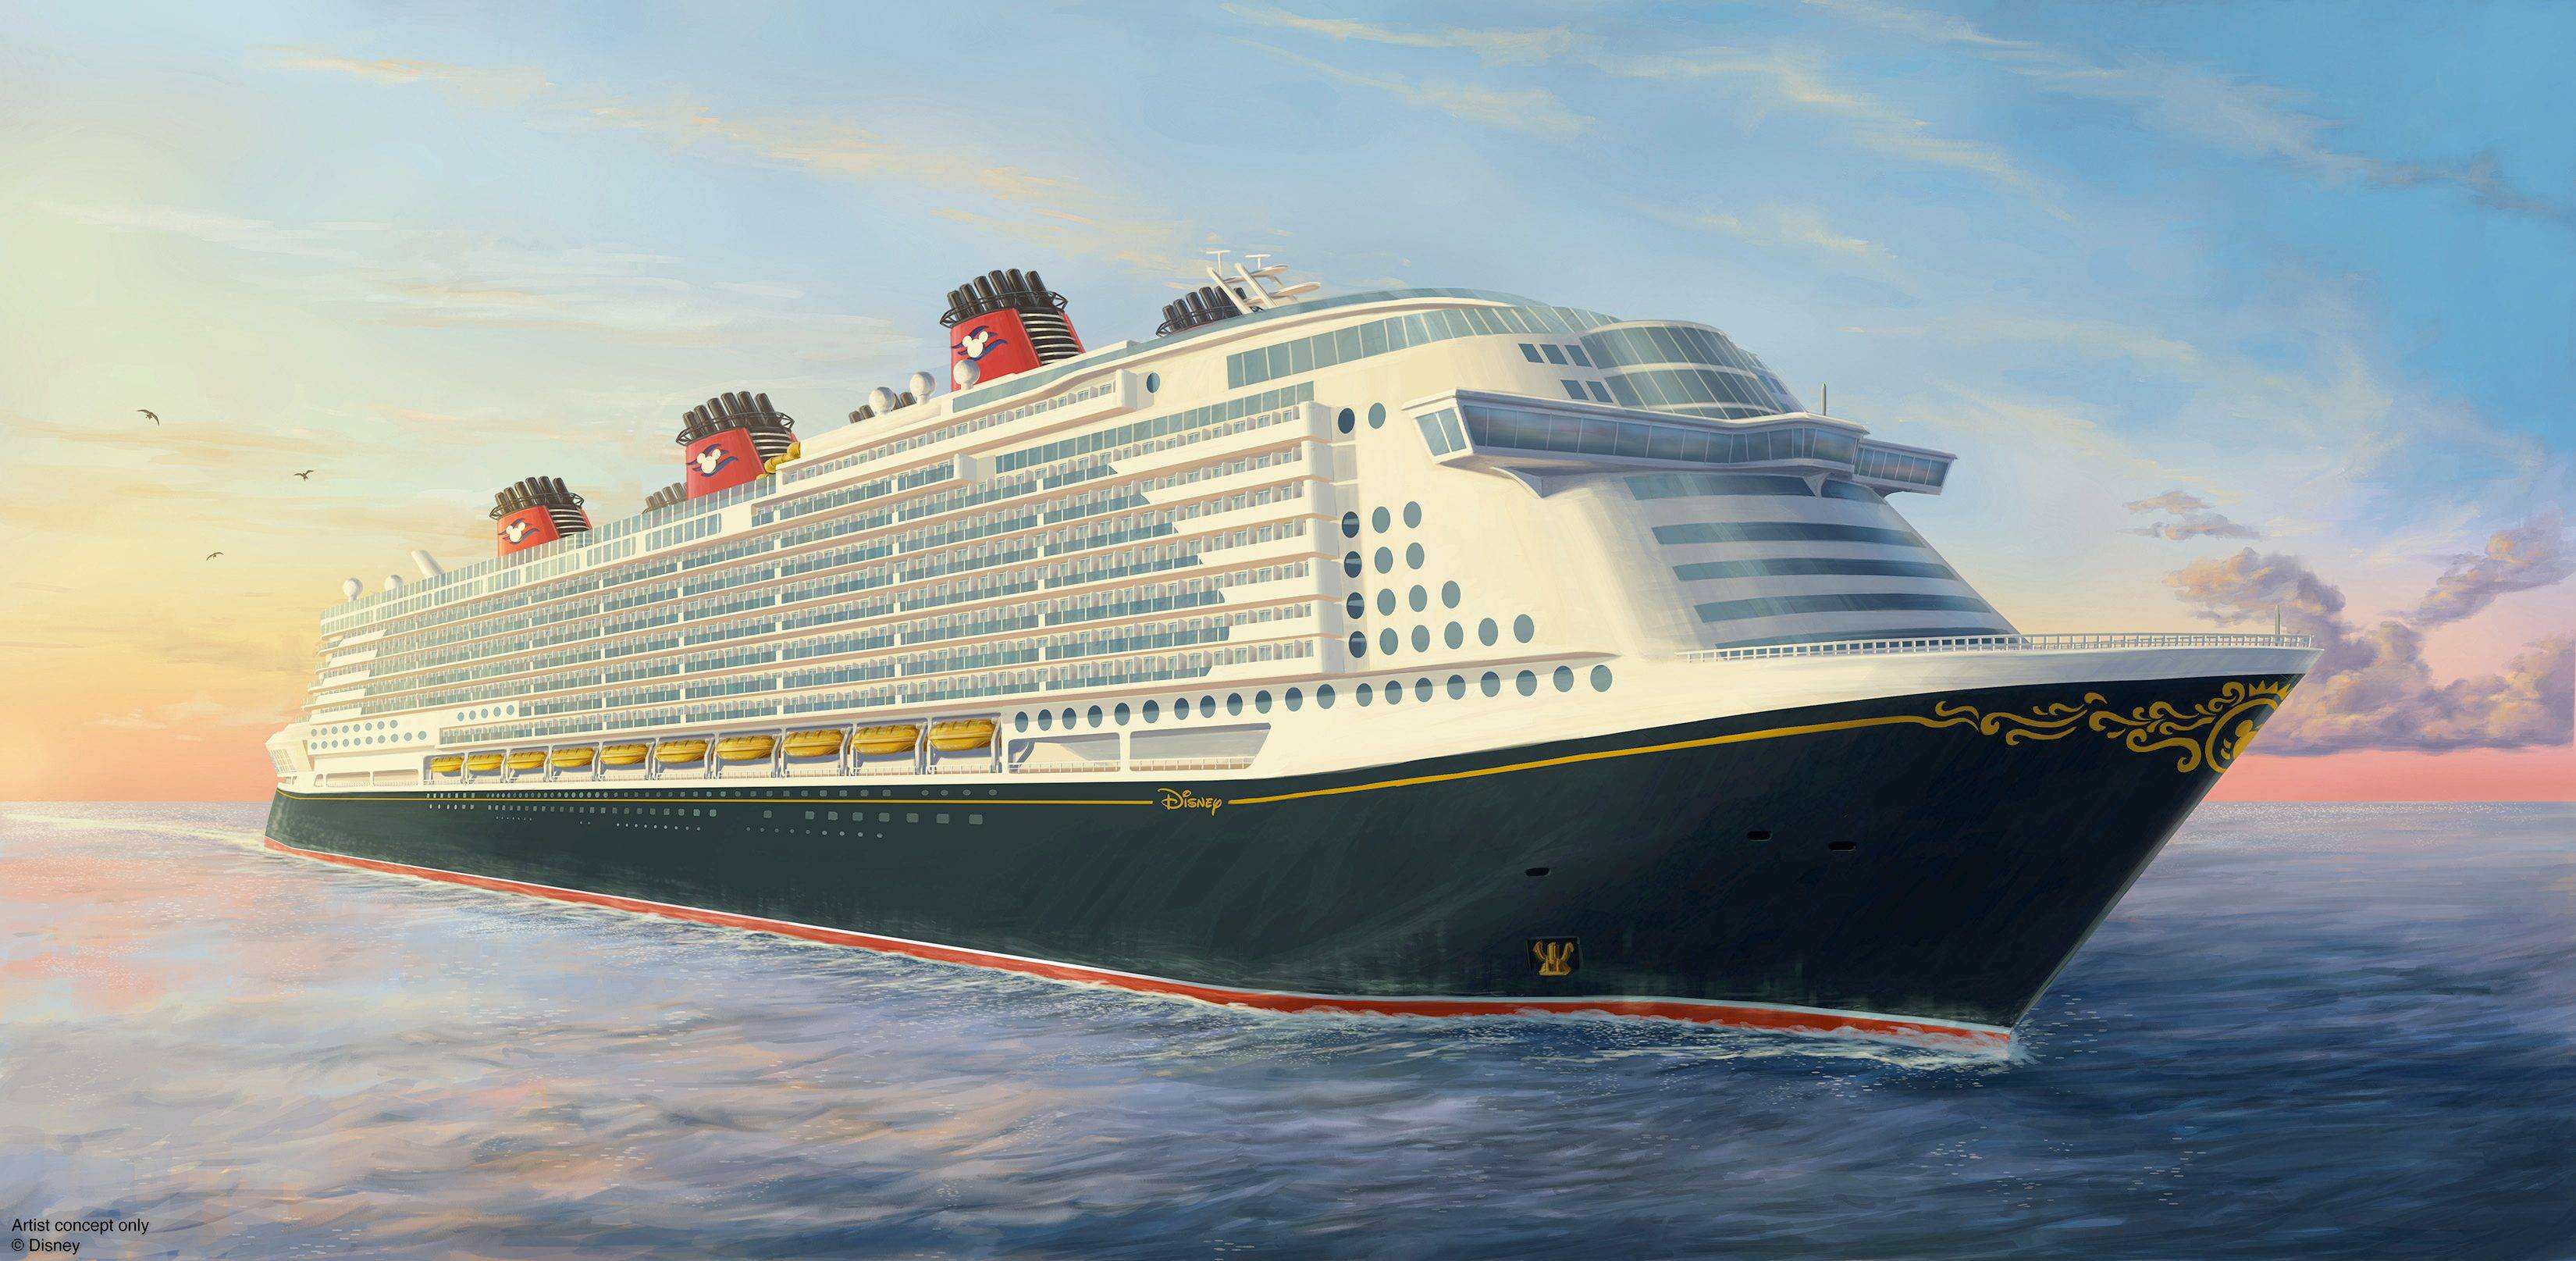 Disney Cruise Line Announces Acquisition of Ship